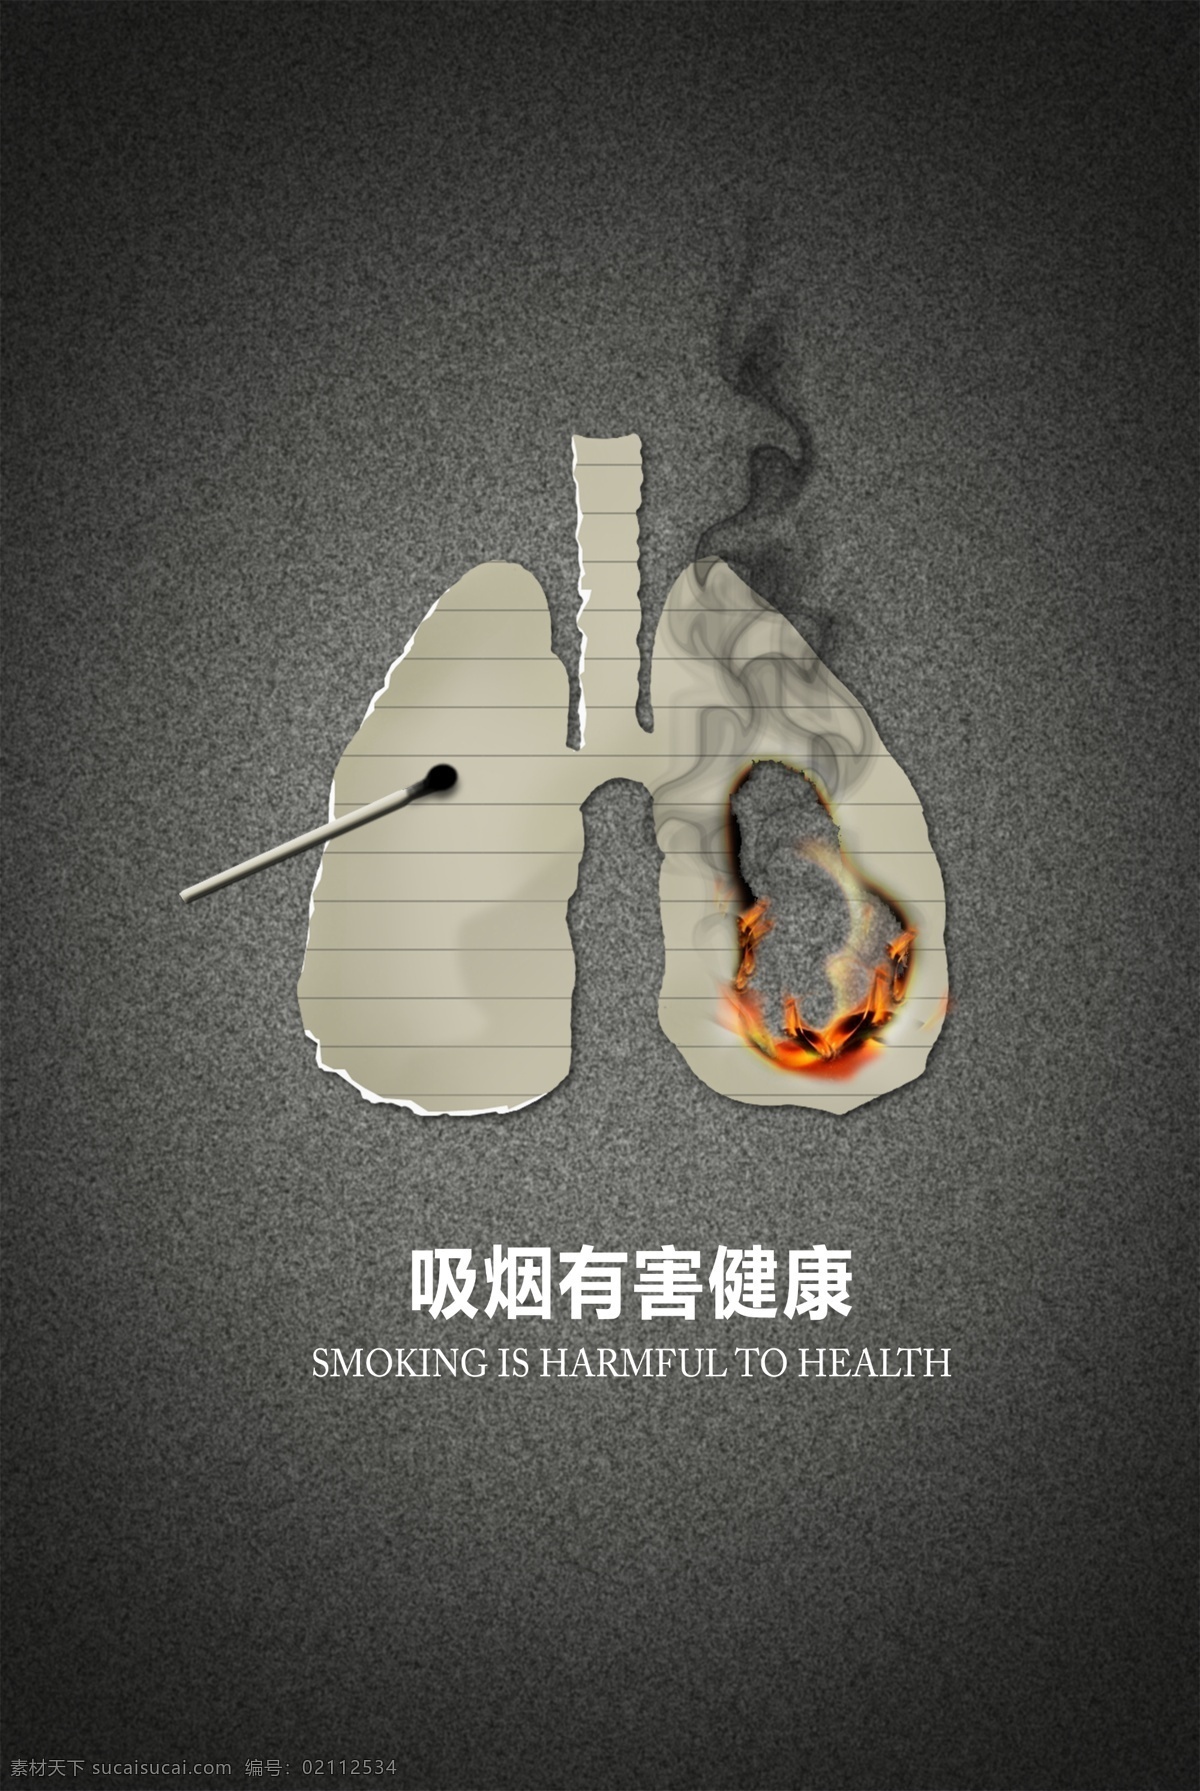 吸烟有害健康 肺叶 火柴 烟雾 黑色 灰色 纸片 燃烧 和谐中国